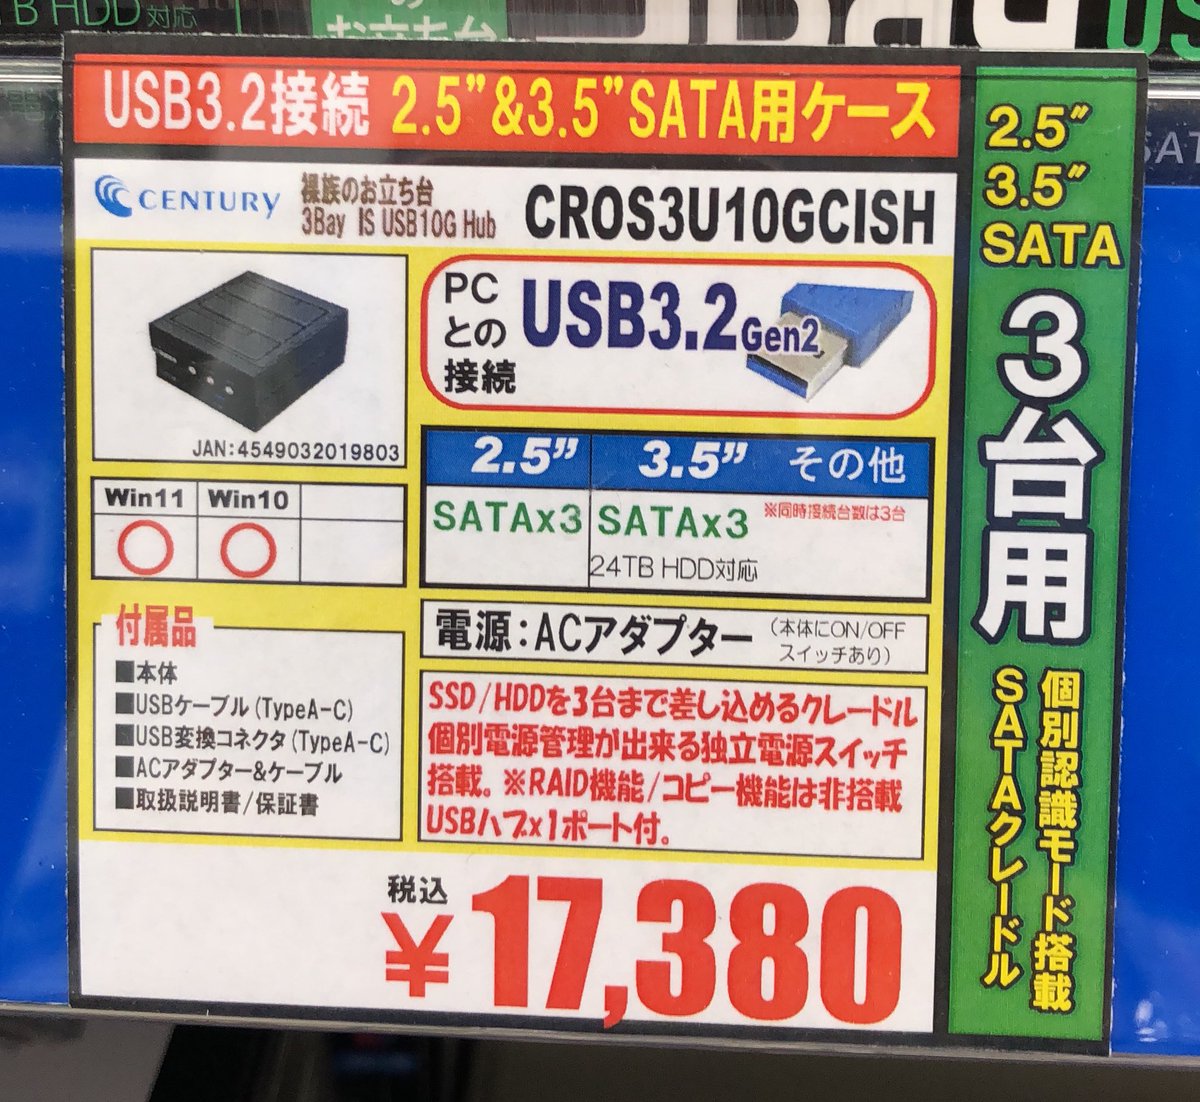 【新製品】CENTURY CROS3U10GCISH 17,380円。USB3.2接続　2.5'&3.5' SATA SSD/HDDが3台まで接続可能なクレードル。使いたいドライブだけ個別にオンオフ出来る独立電源スイッチが便利です！